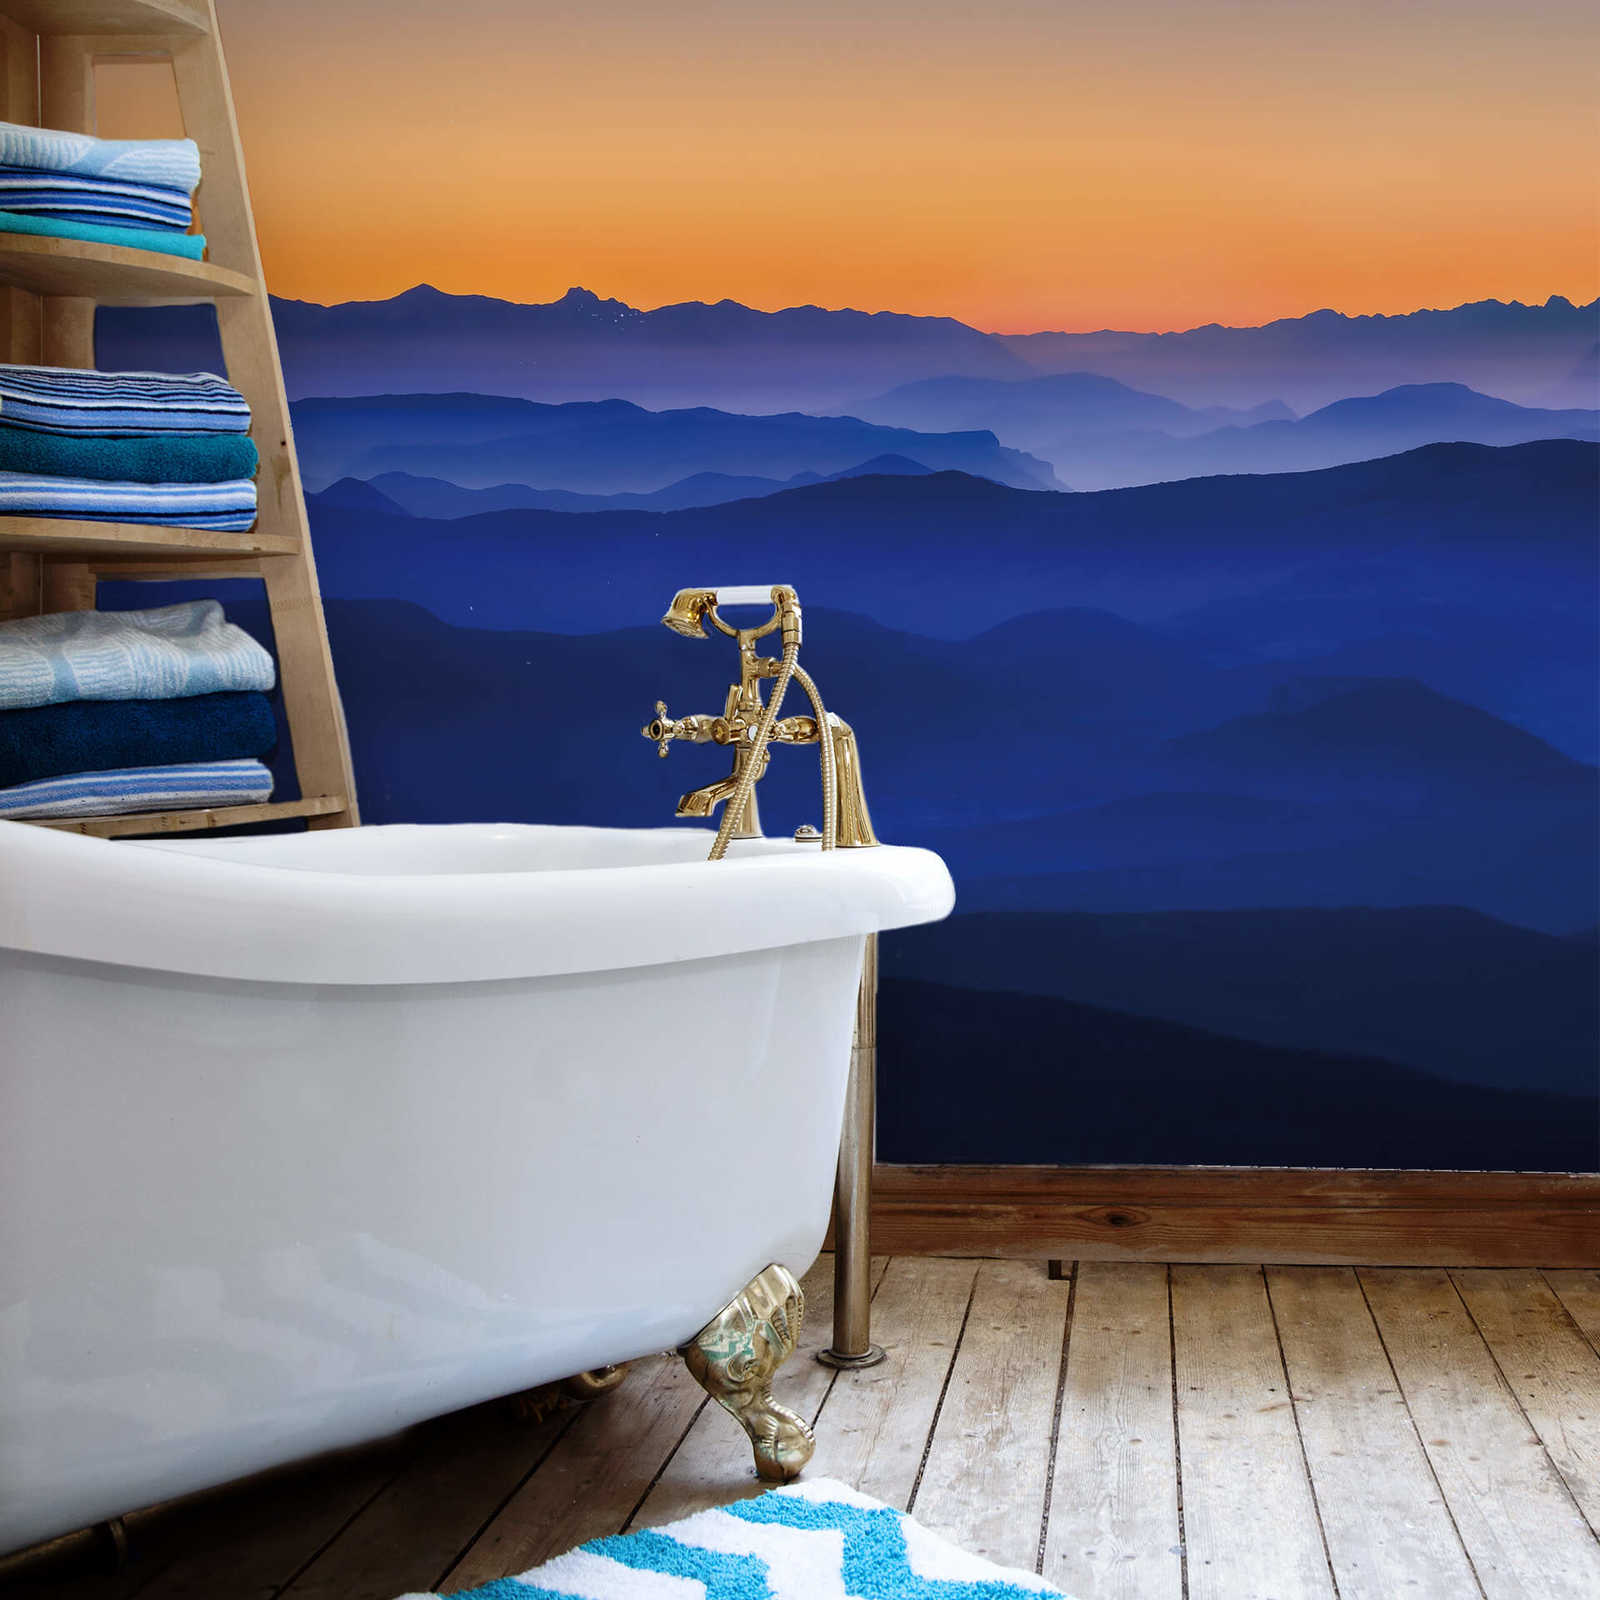             Fototapete Berge bei Sonnenaufgang – Blau, Orange, Gelb
        